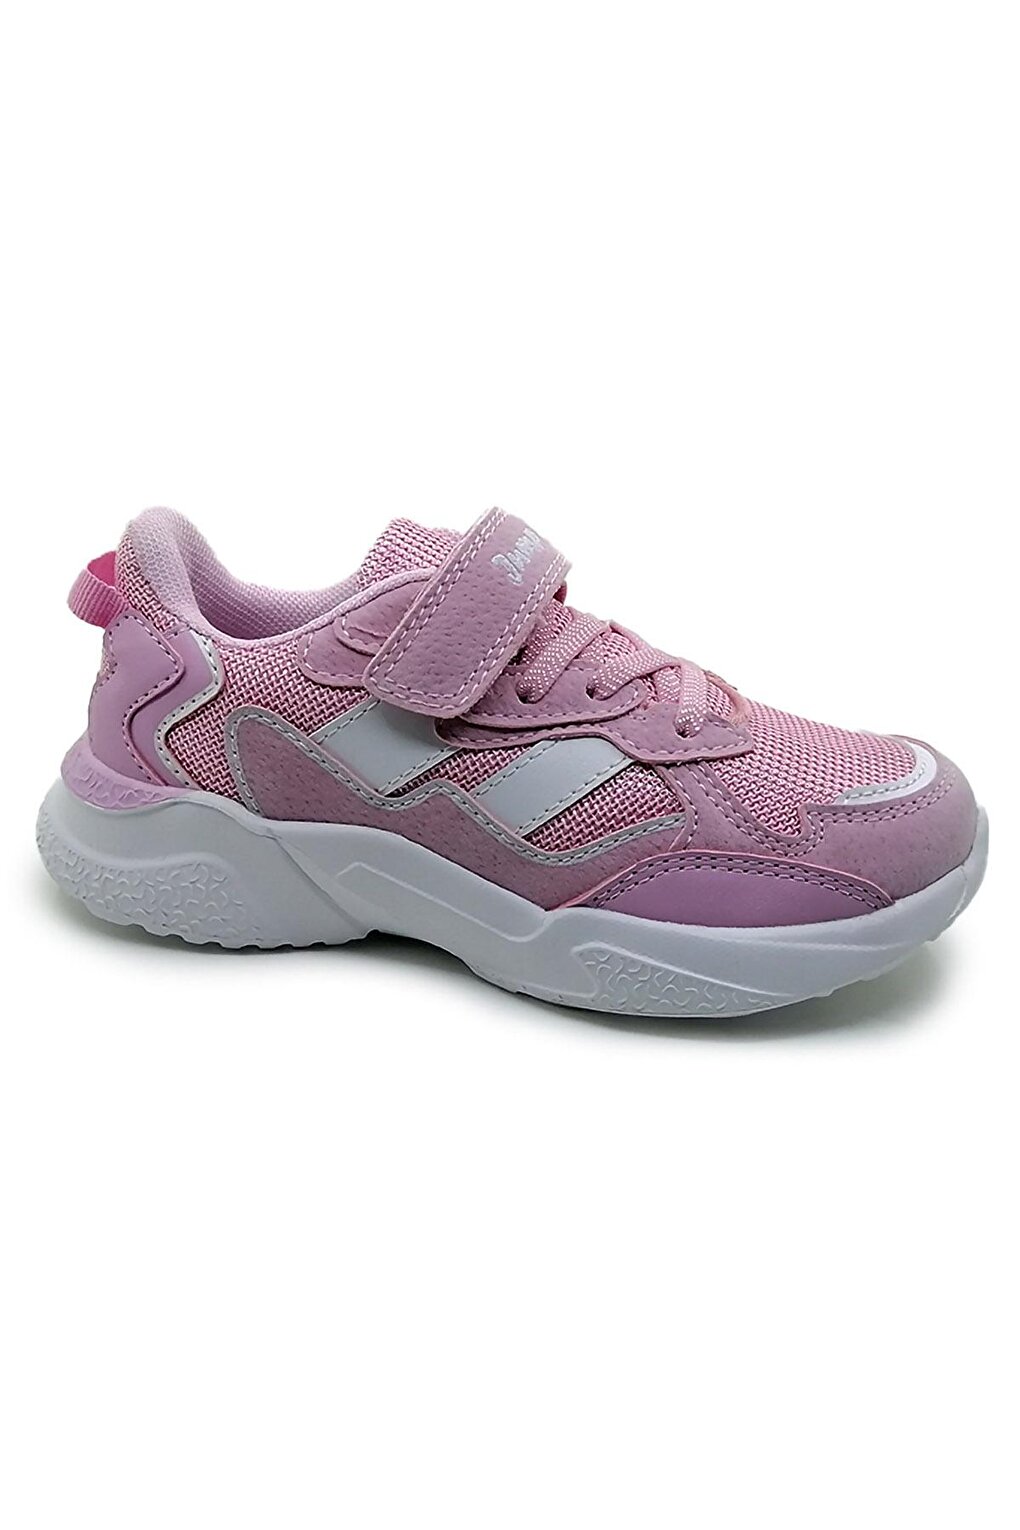 Детская спортивная обувь унисекс Jump, розовый-белый спортивная обувь унисекс с широким носком белый